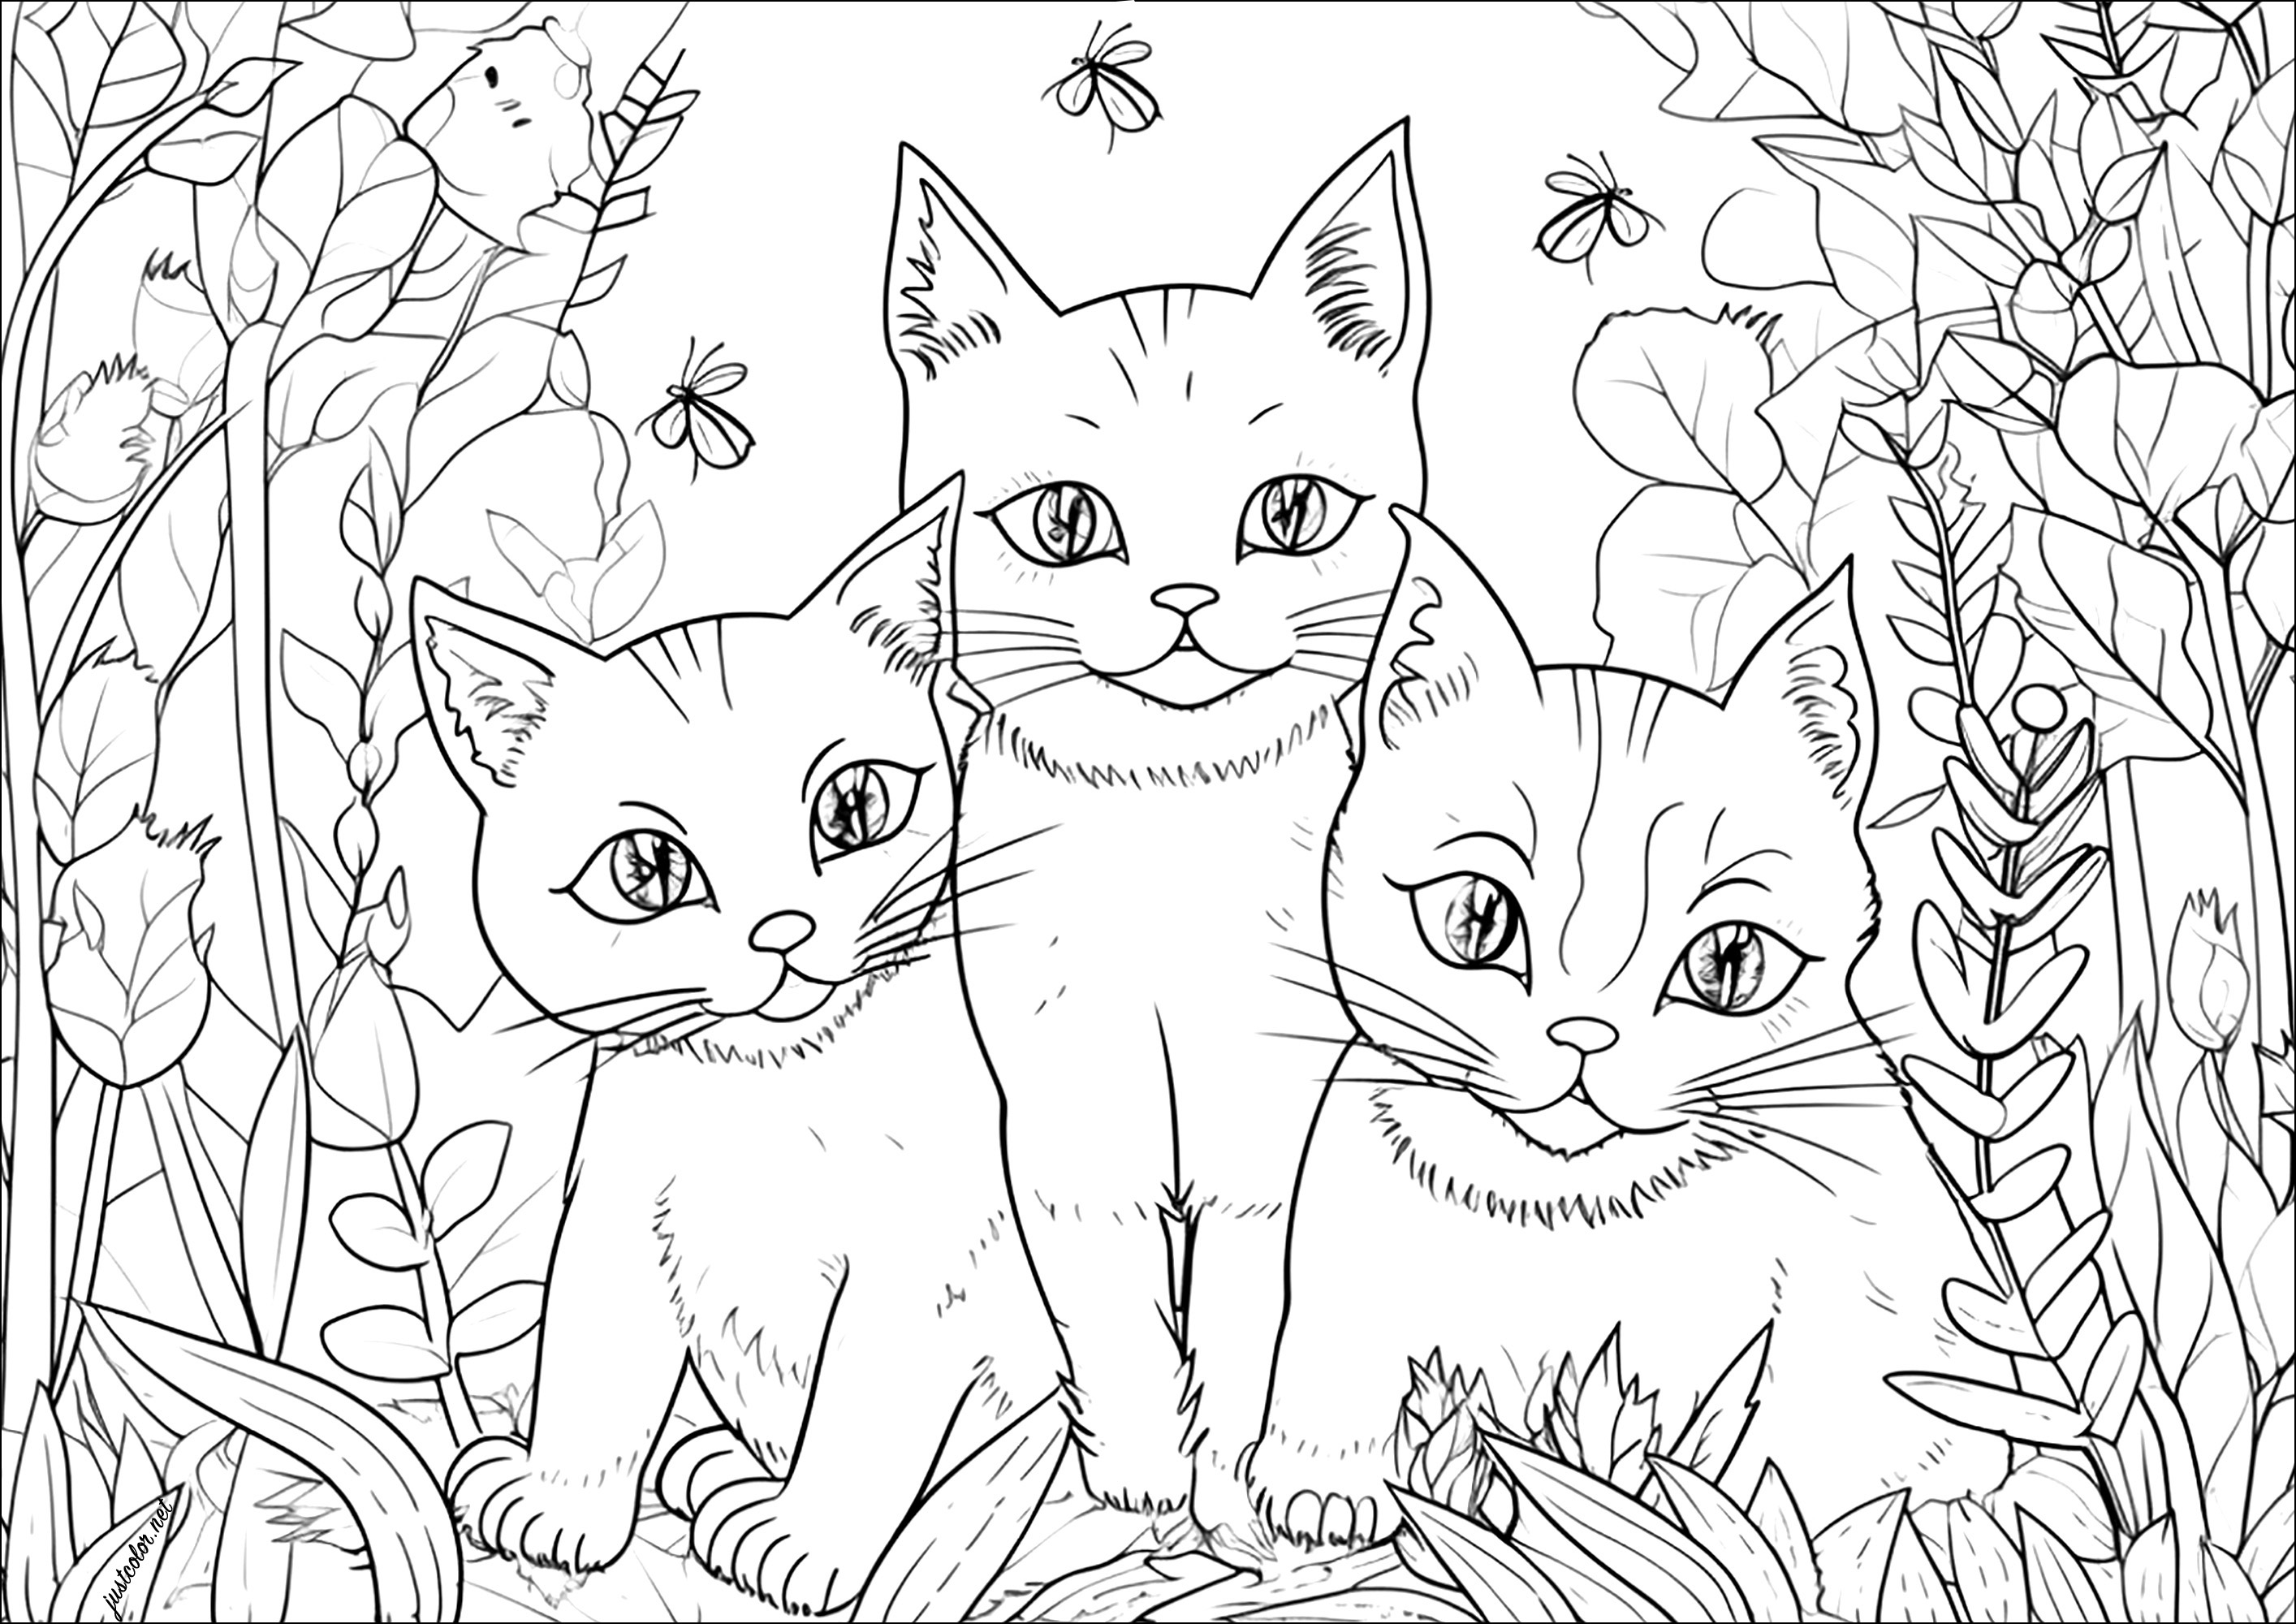 Drei hübsche Katzen in einem Garten. In einem hübschen Garten umgeben ein paar Insekten diese drei schönen Katzen, die in einem sehr realistischen Stil gezeichnet sind.